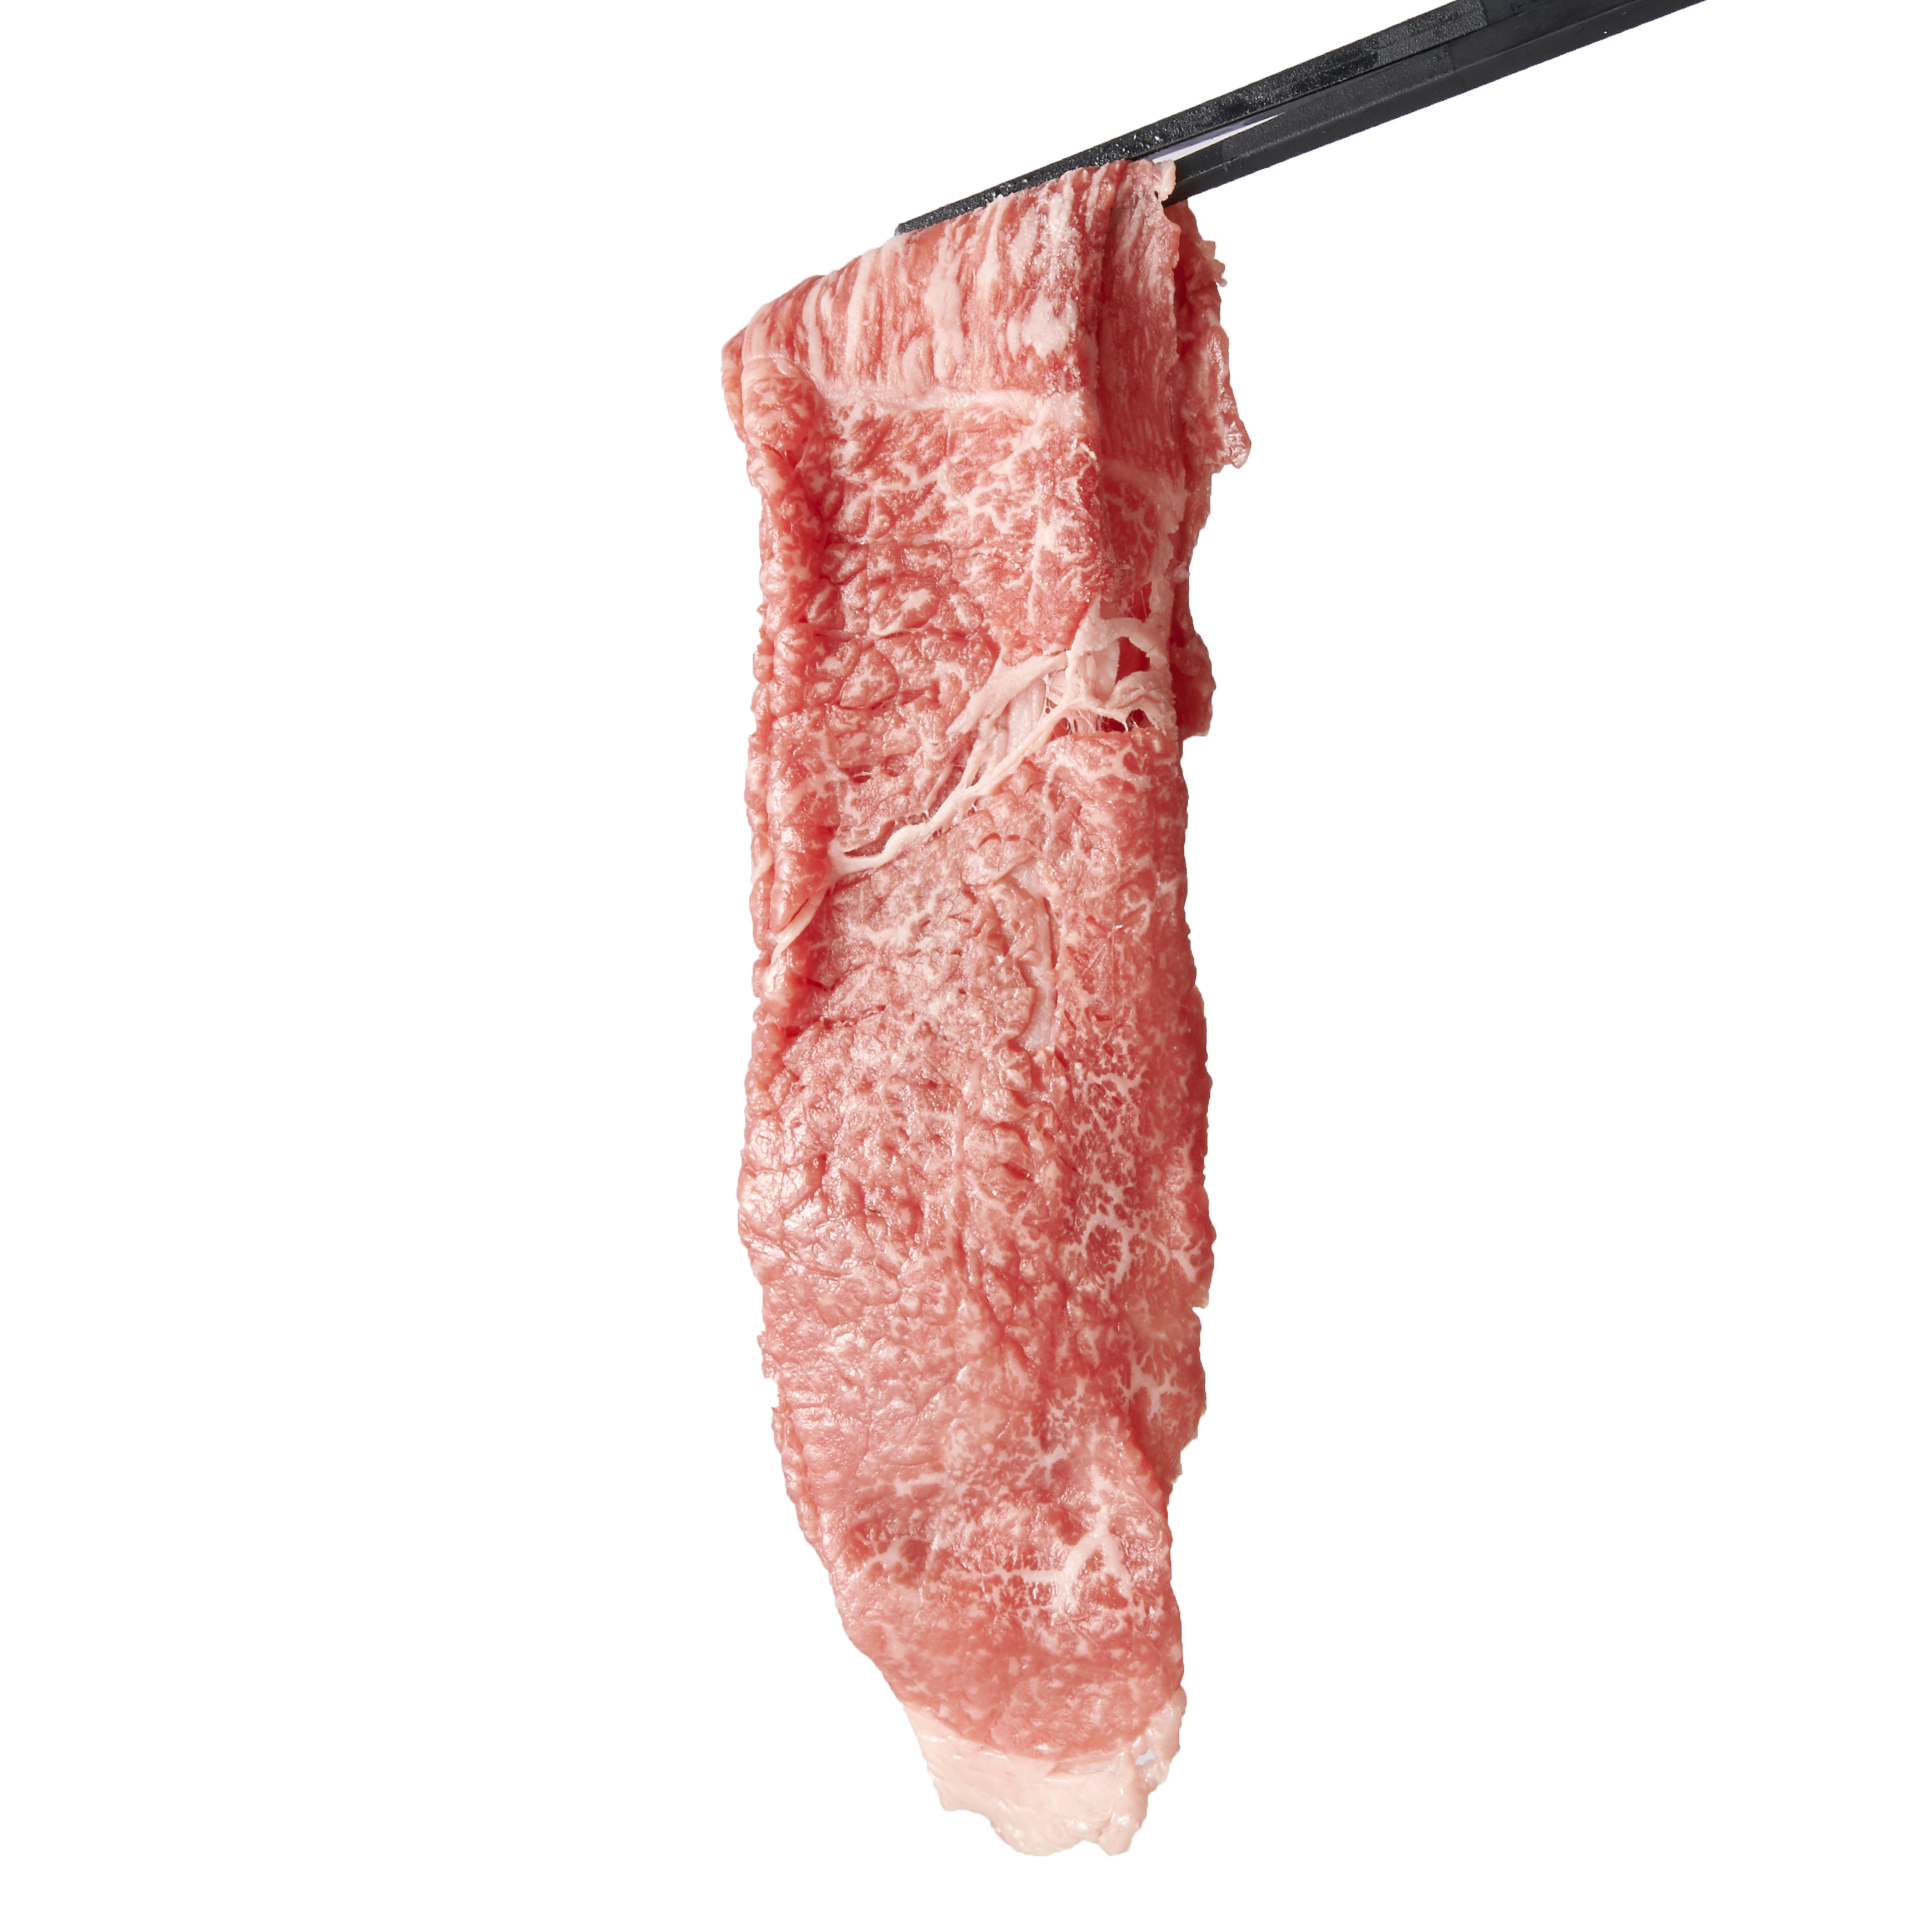 2023年】通販で買えるすき焼き肉のおすすめ人気ランキング29選【徹底比較】　mybest